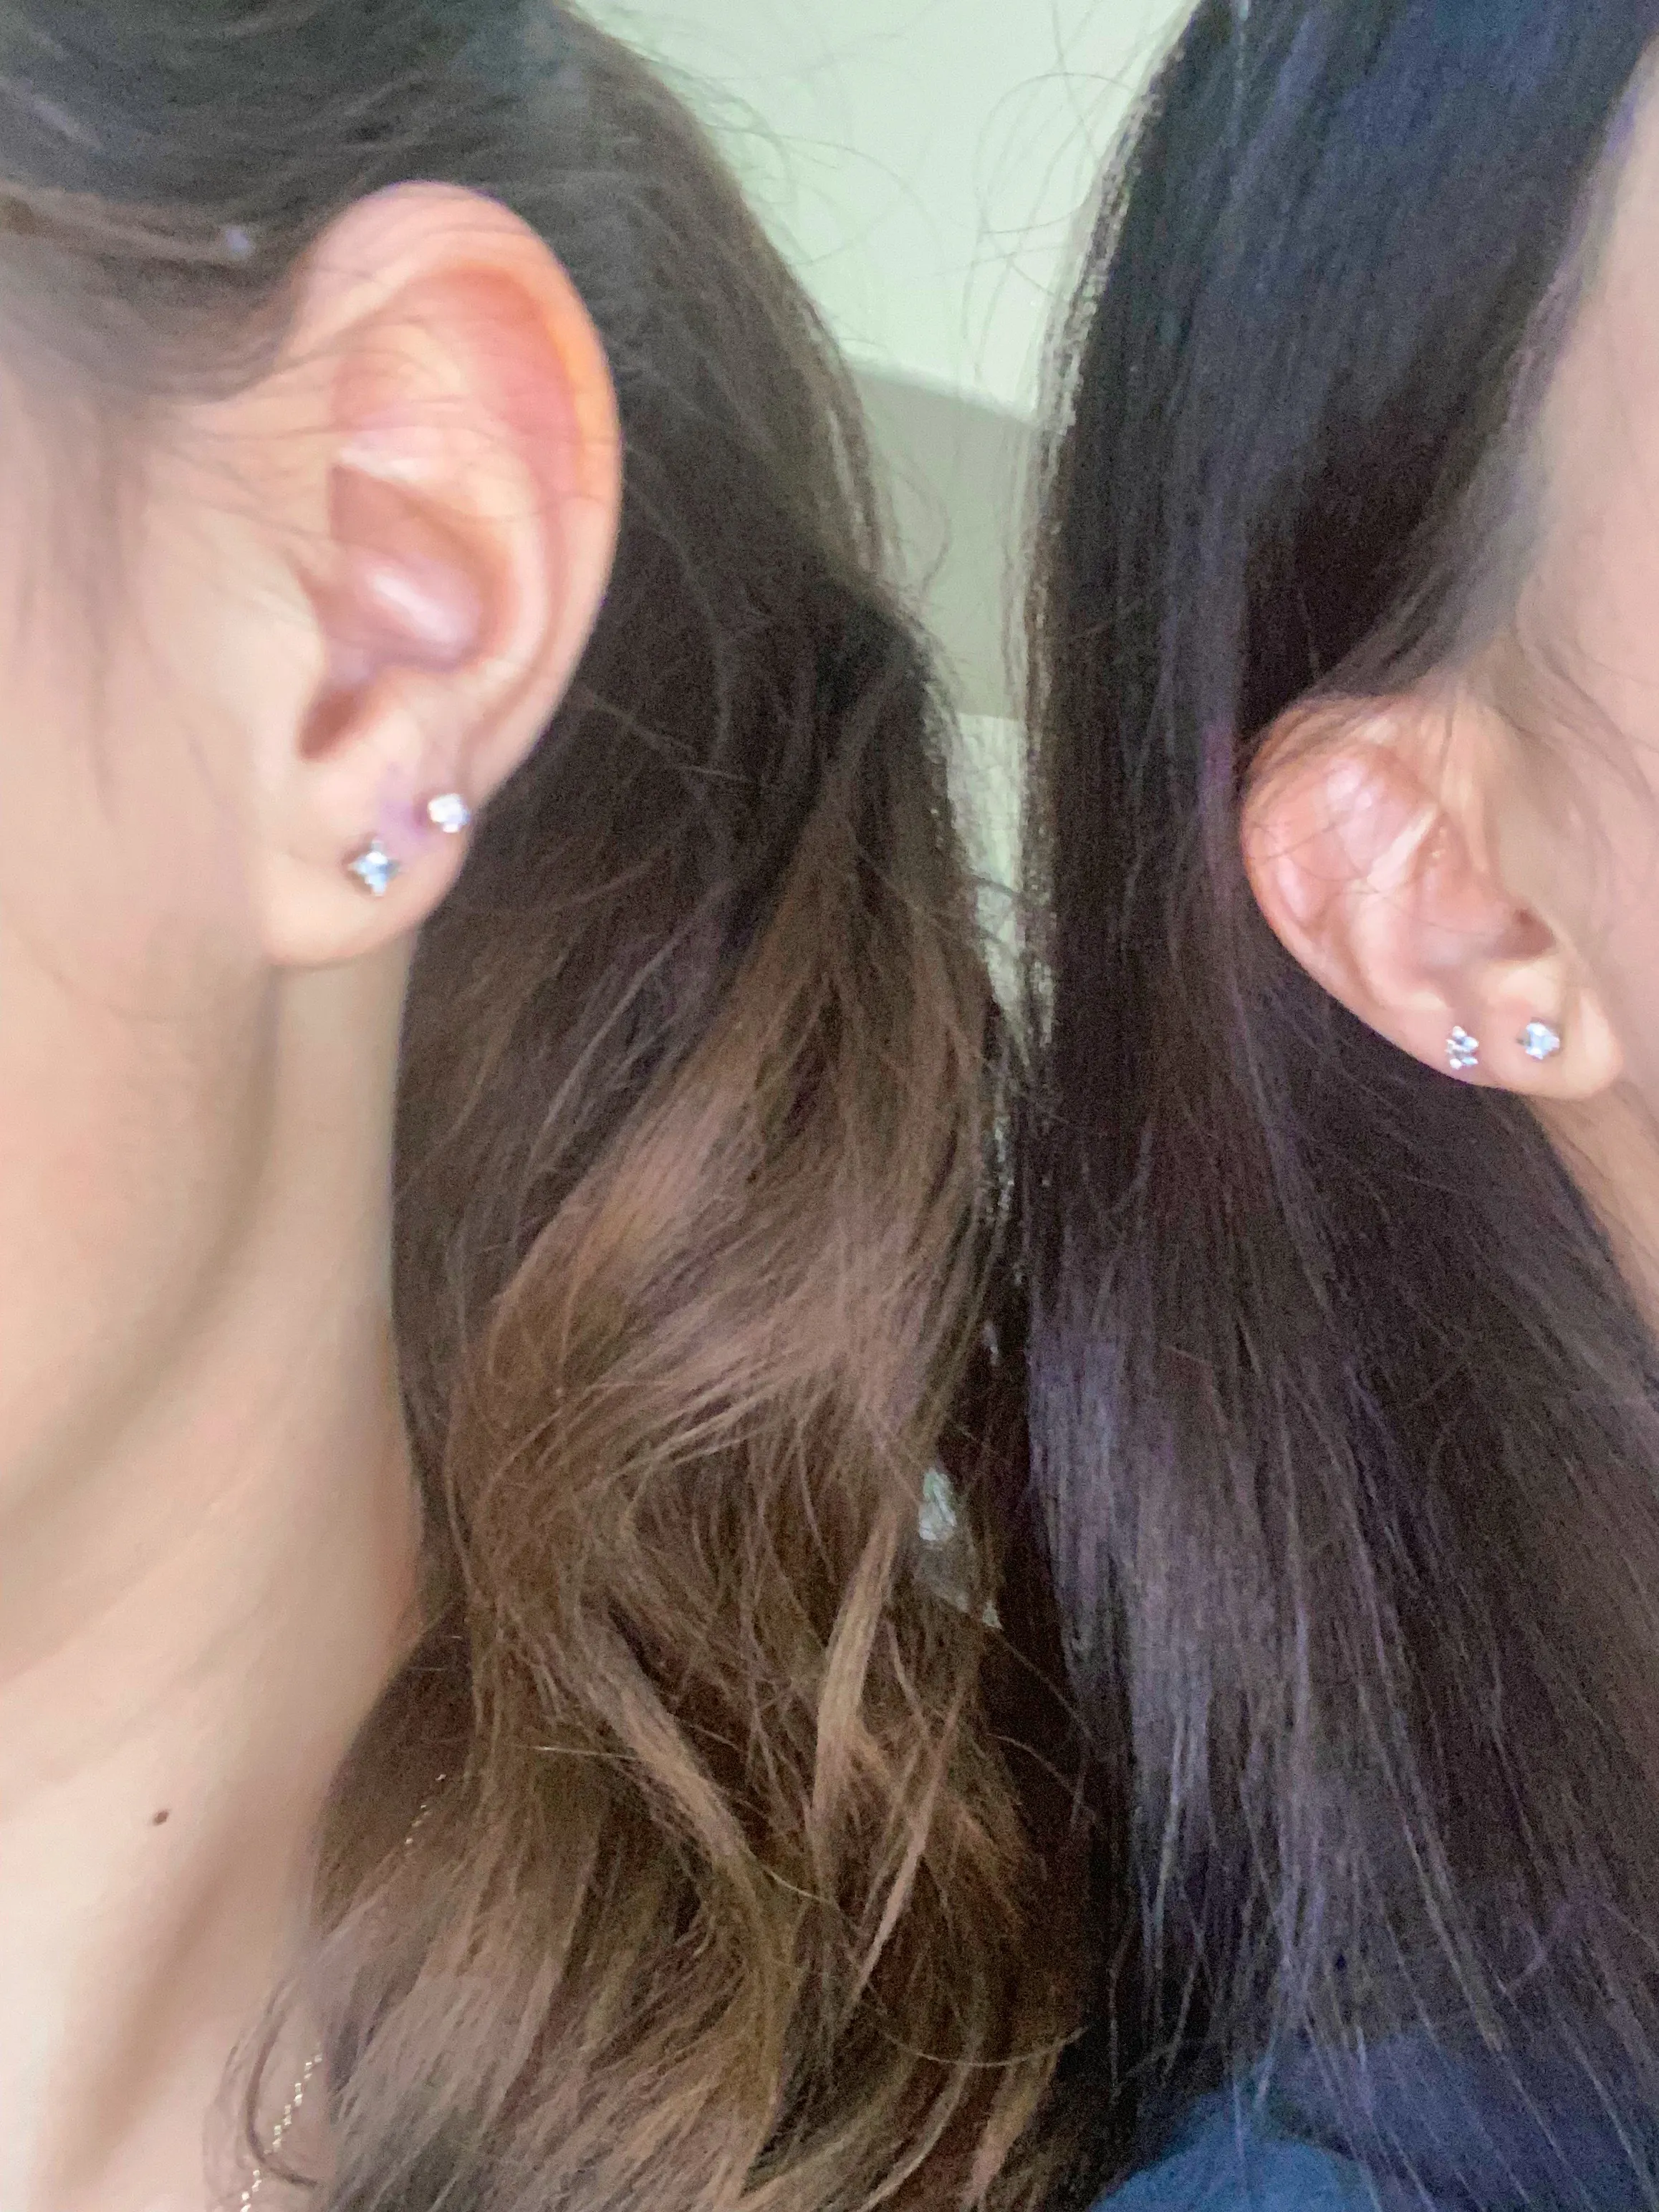 second ear piercings